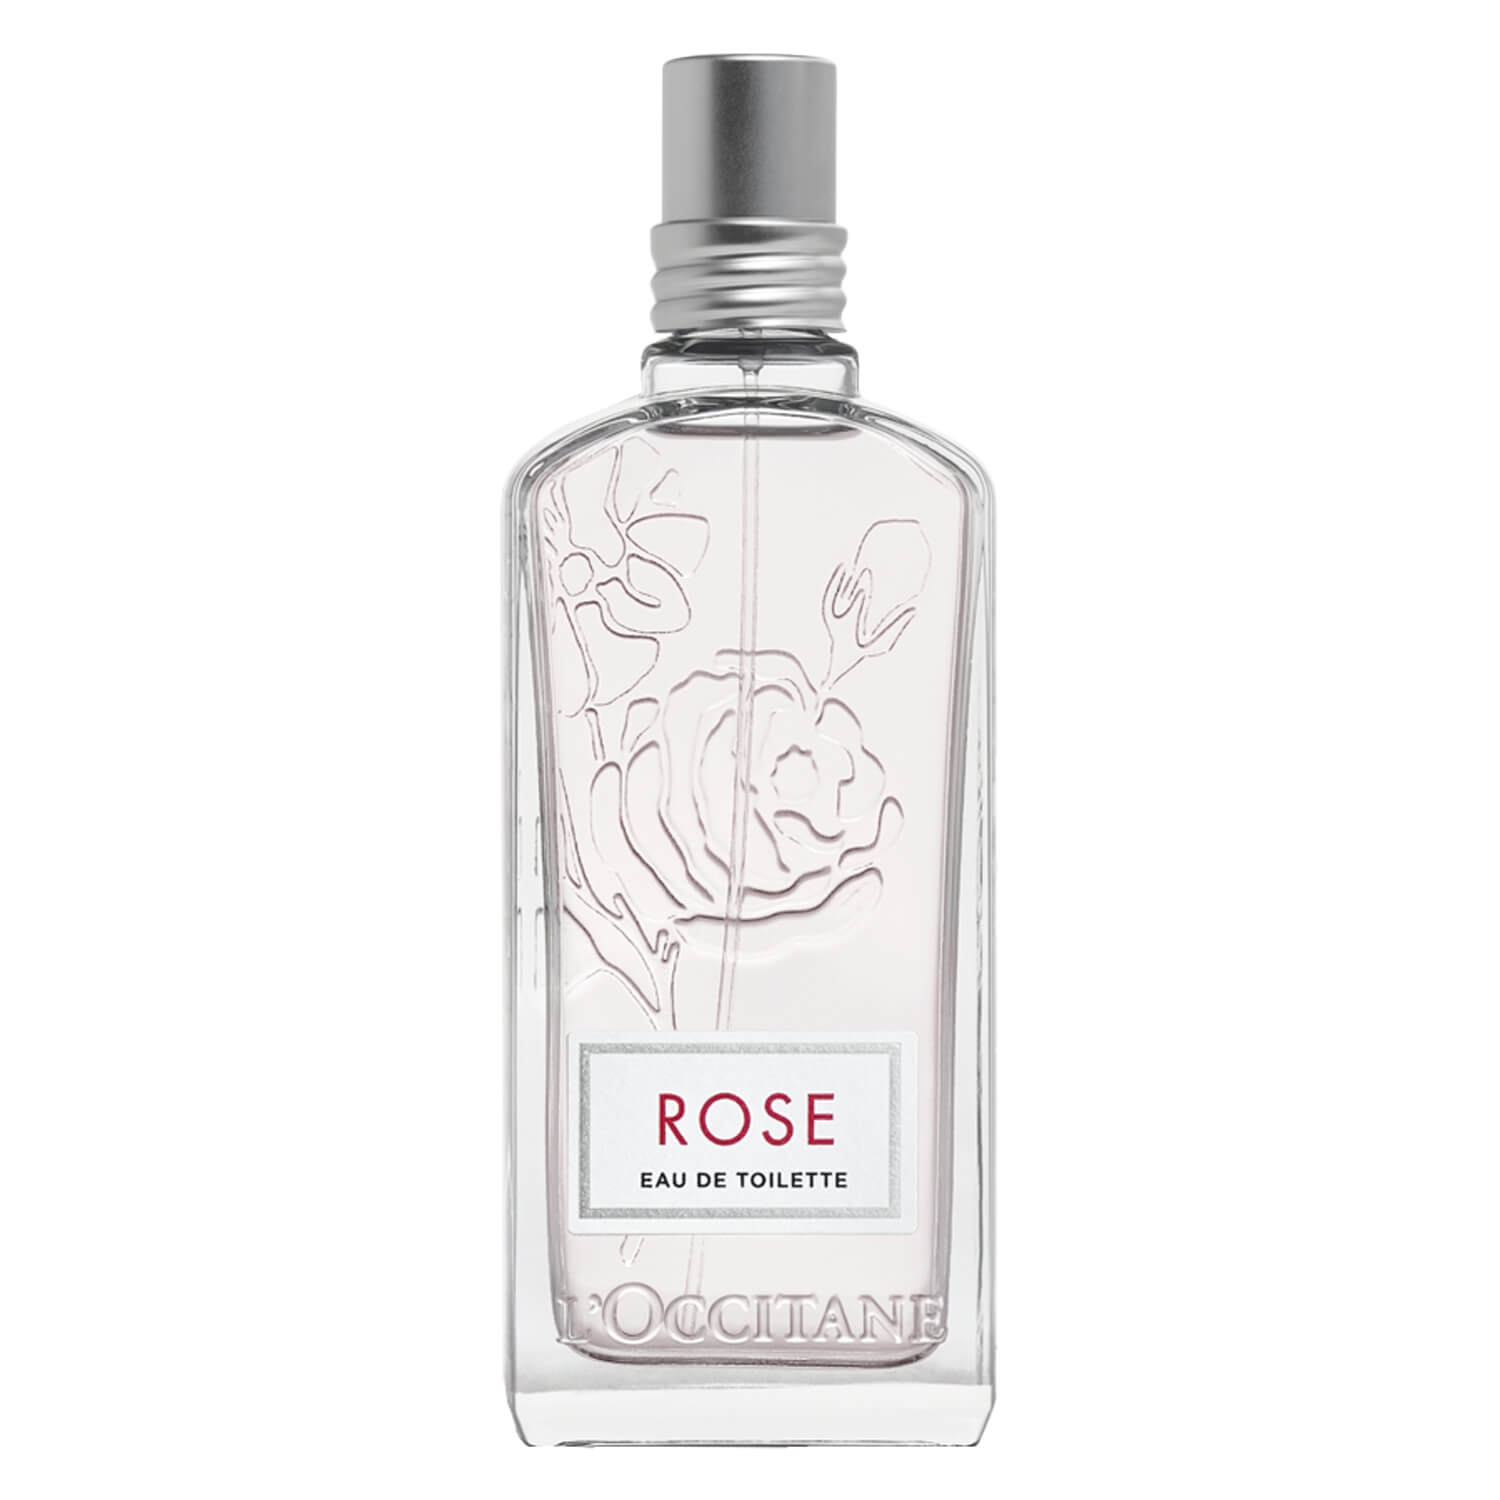 Product image from L'Occitane Fragrance - Rose Eau de Toilette